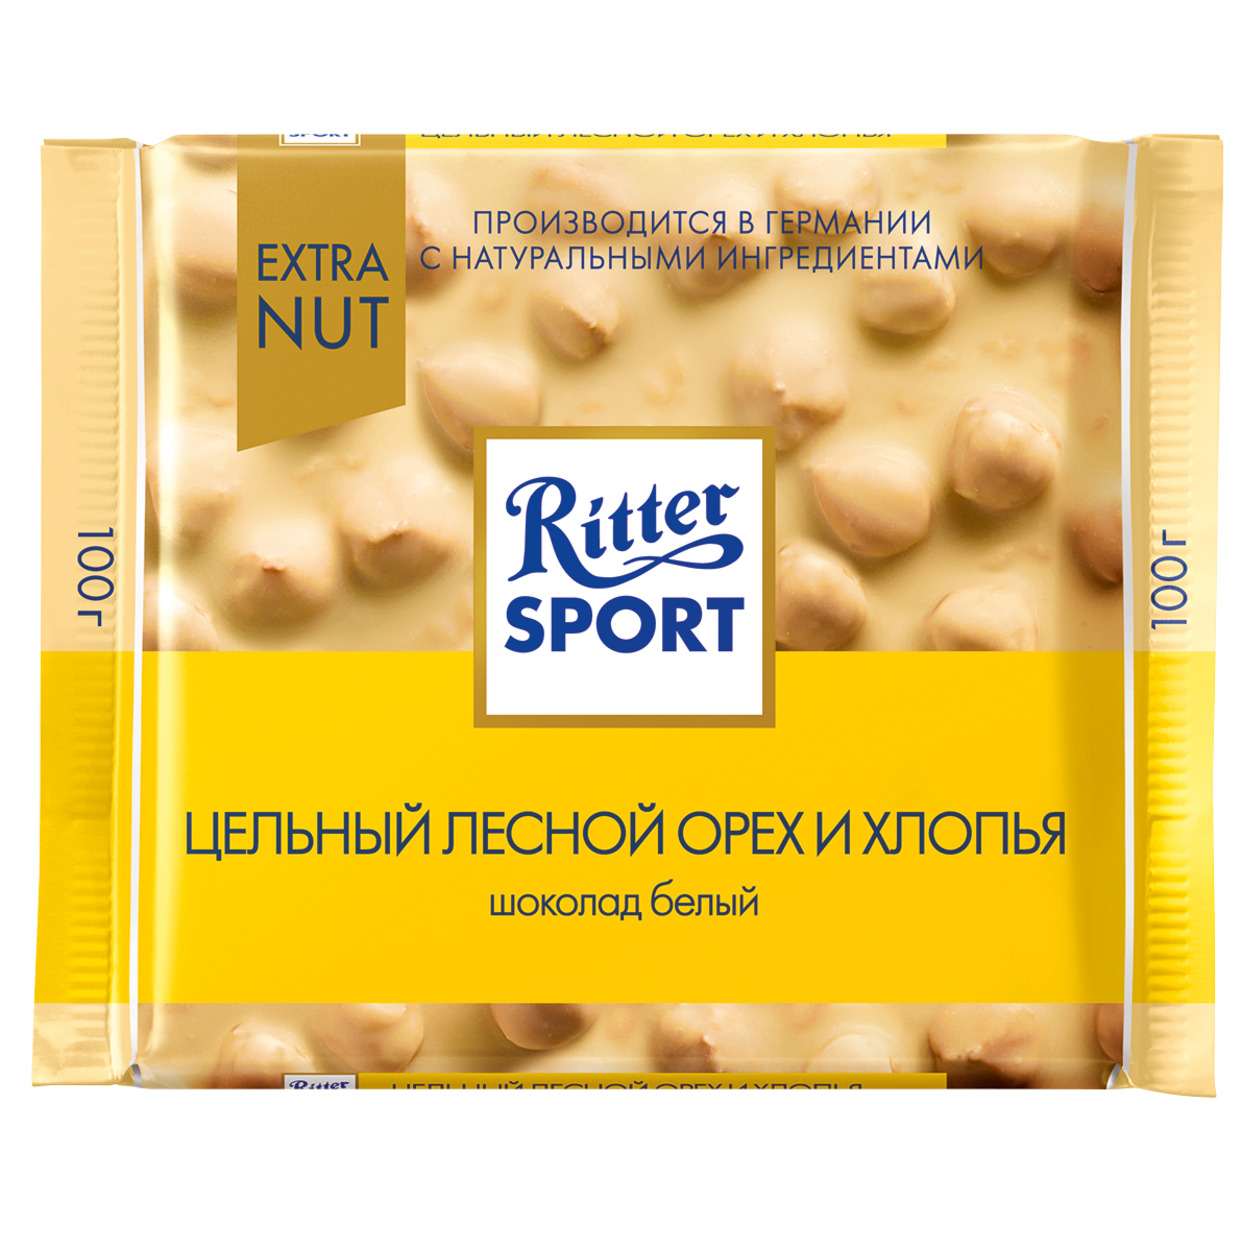 Шоколад Ritter Sport Белый Цельный лесной орех и хлопья 100г по акции в Пятерочке